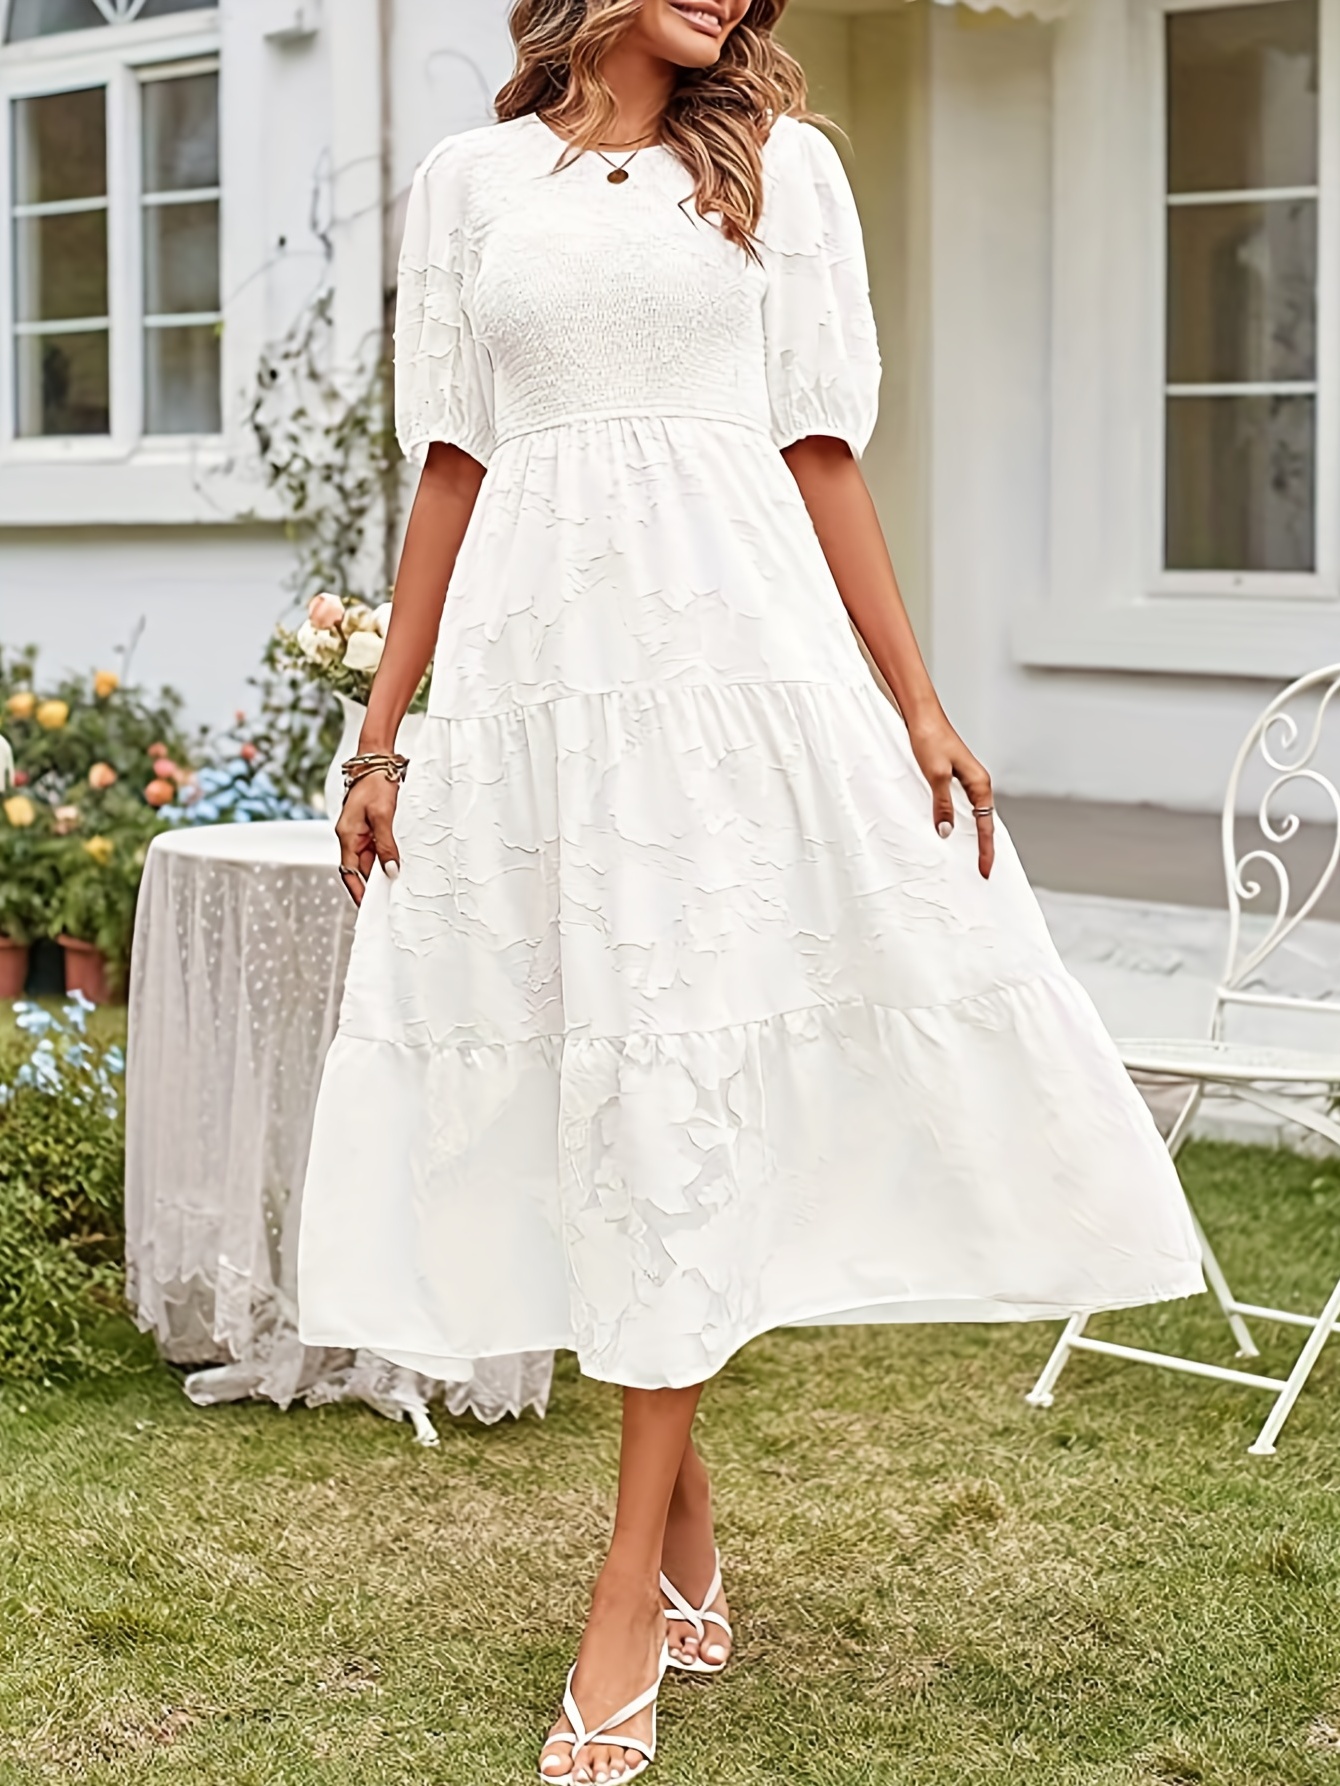 White Jacquard Dresses for Women Classy Summer Short Sleeve Chic